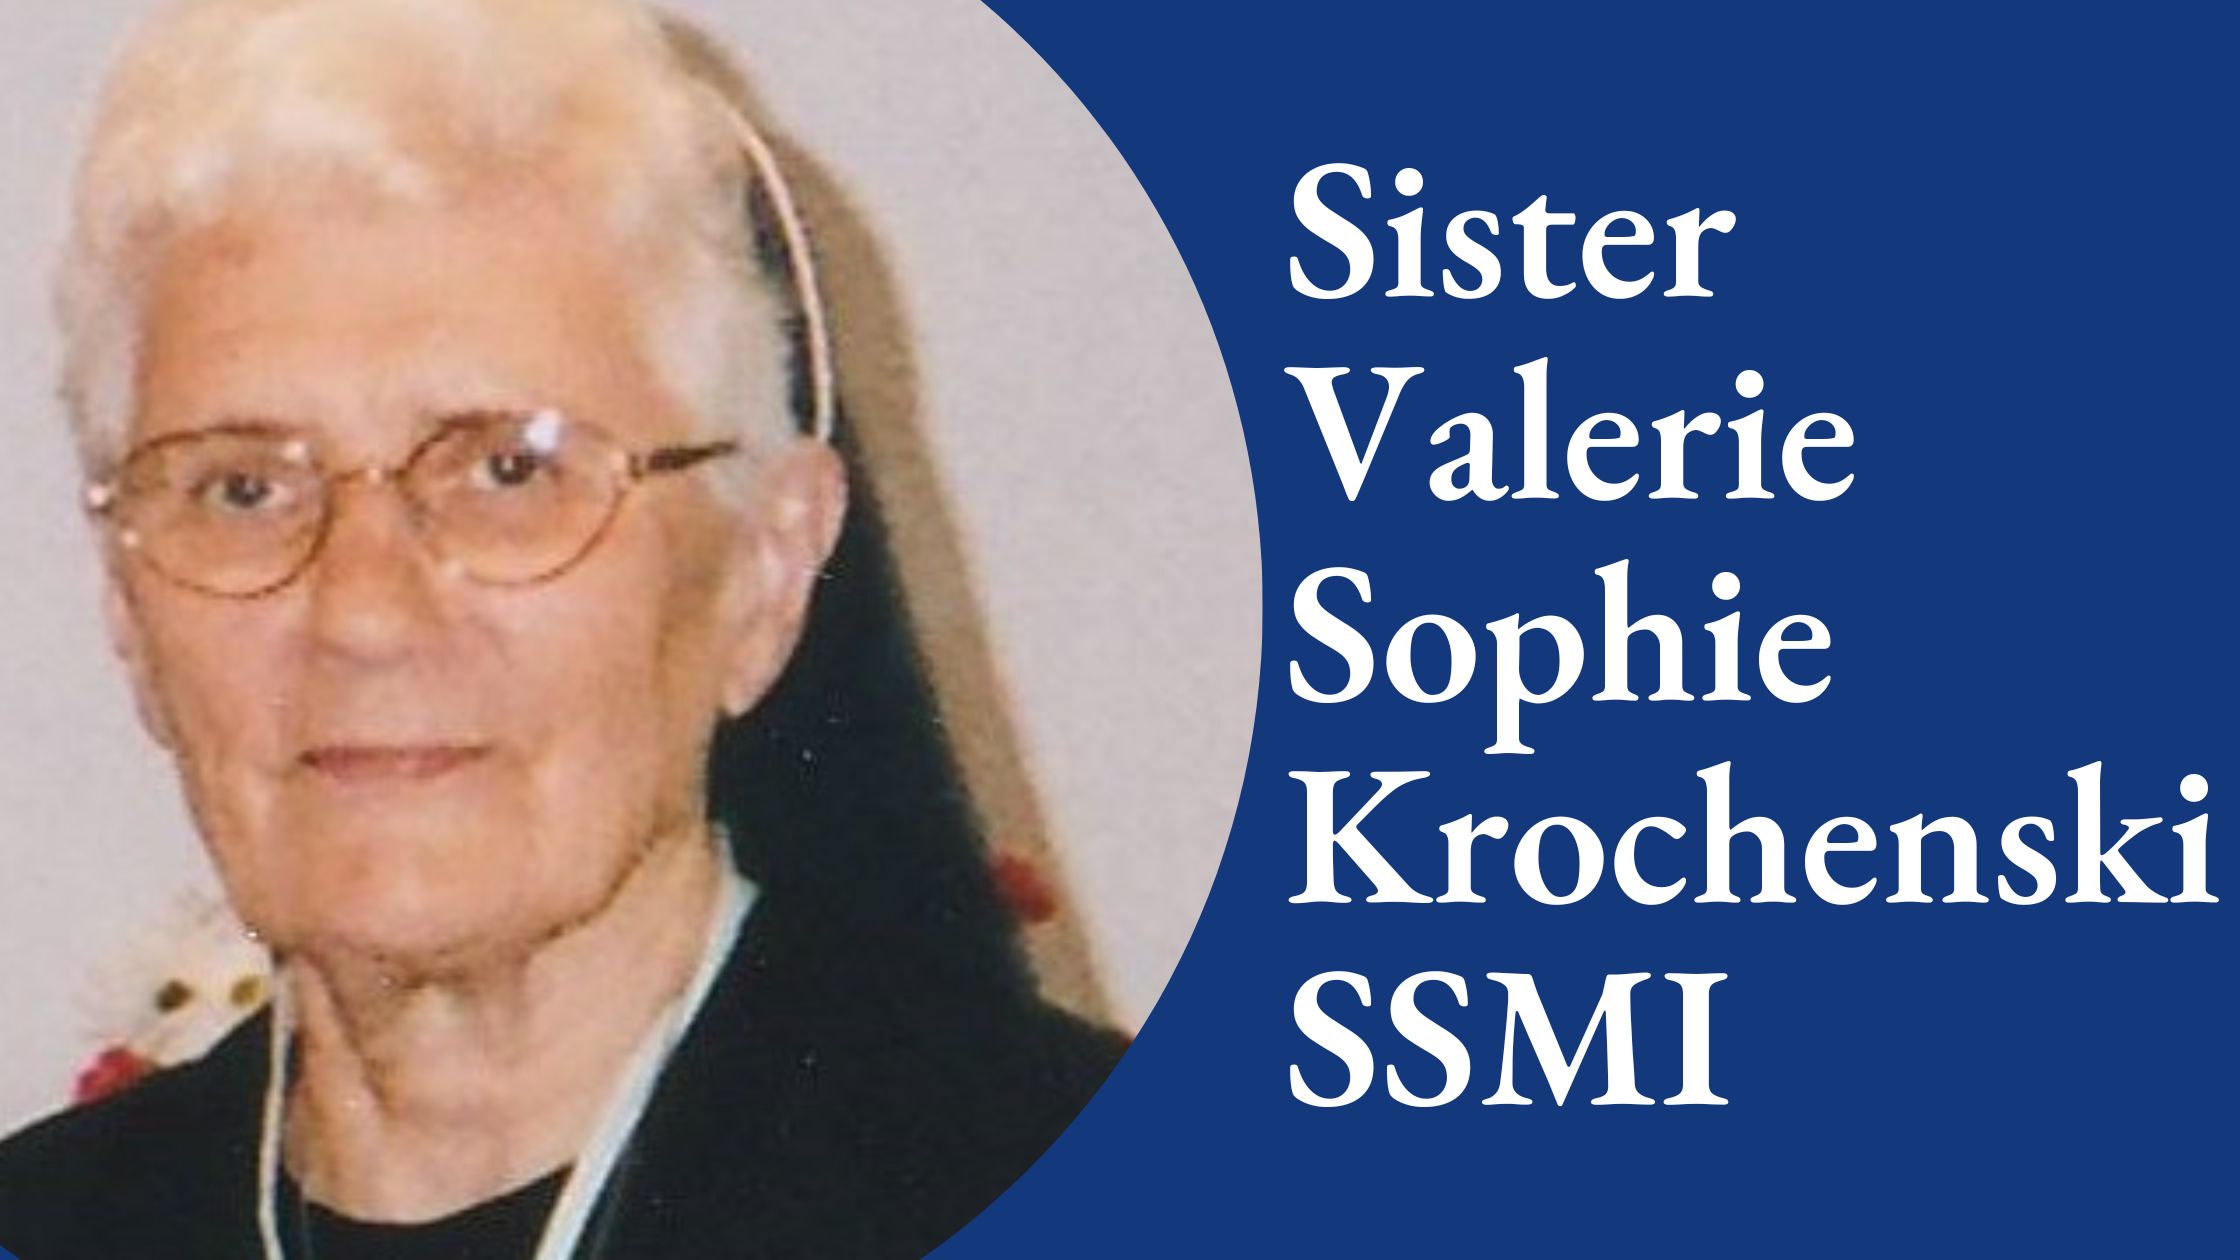 Sister Valerie Sophie Krochenski, SSMI